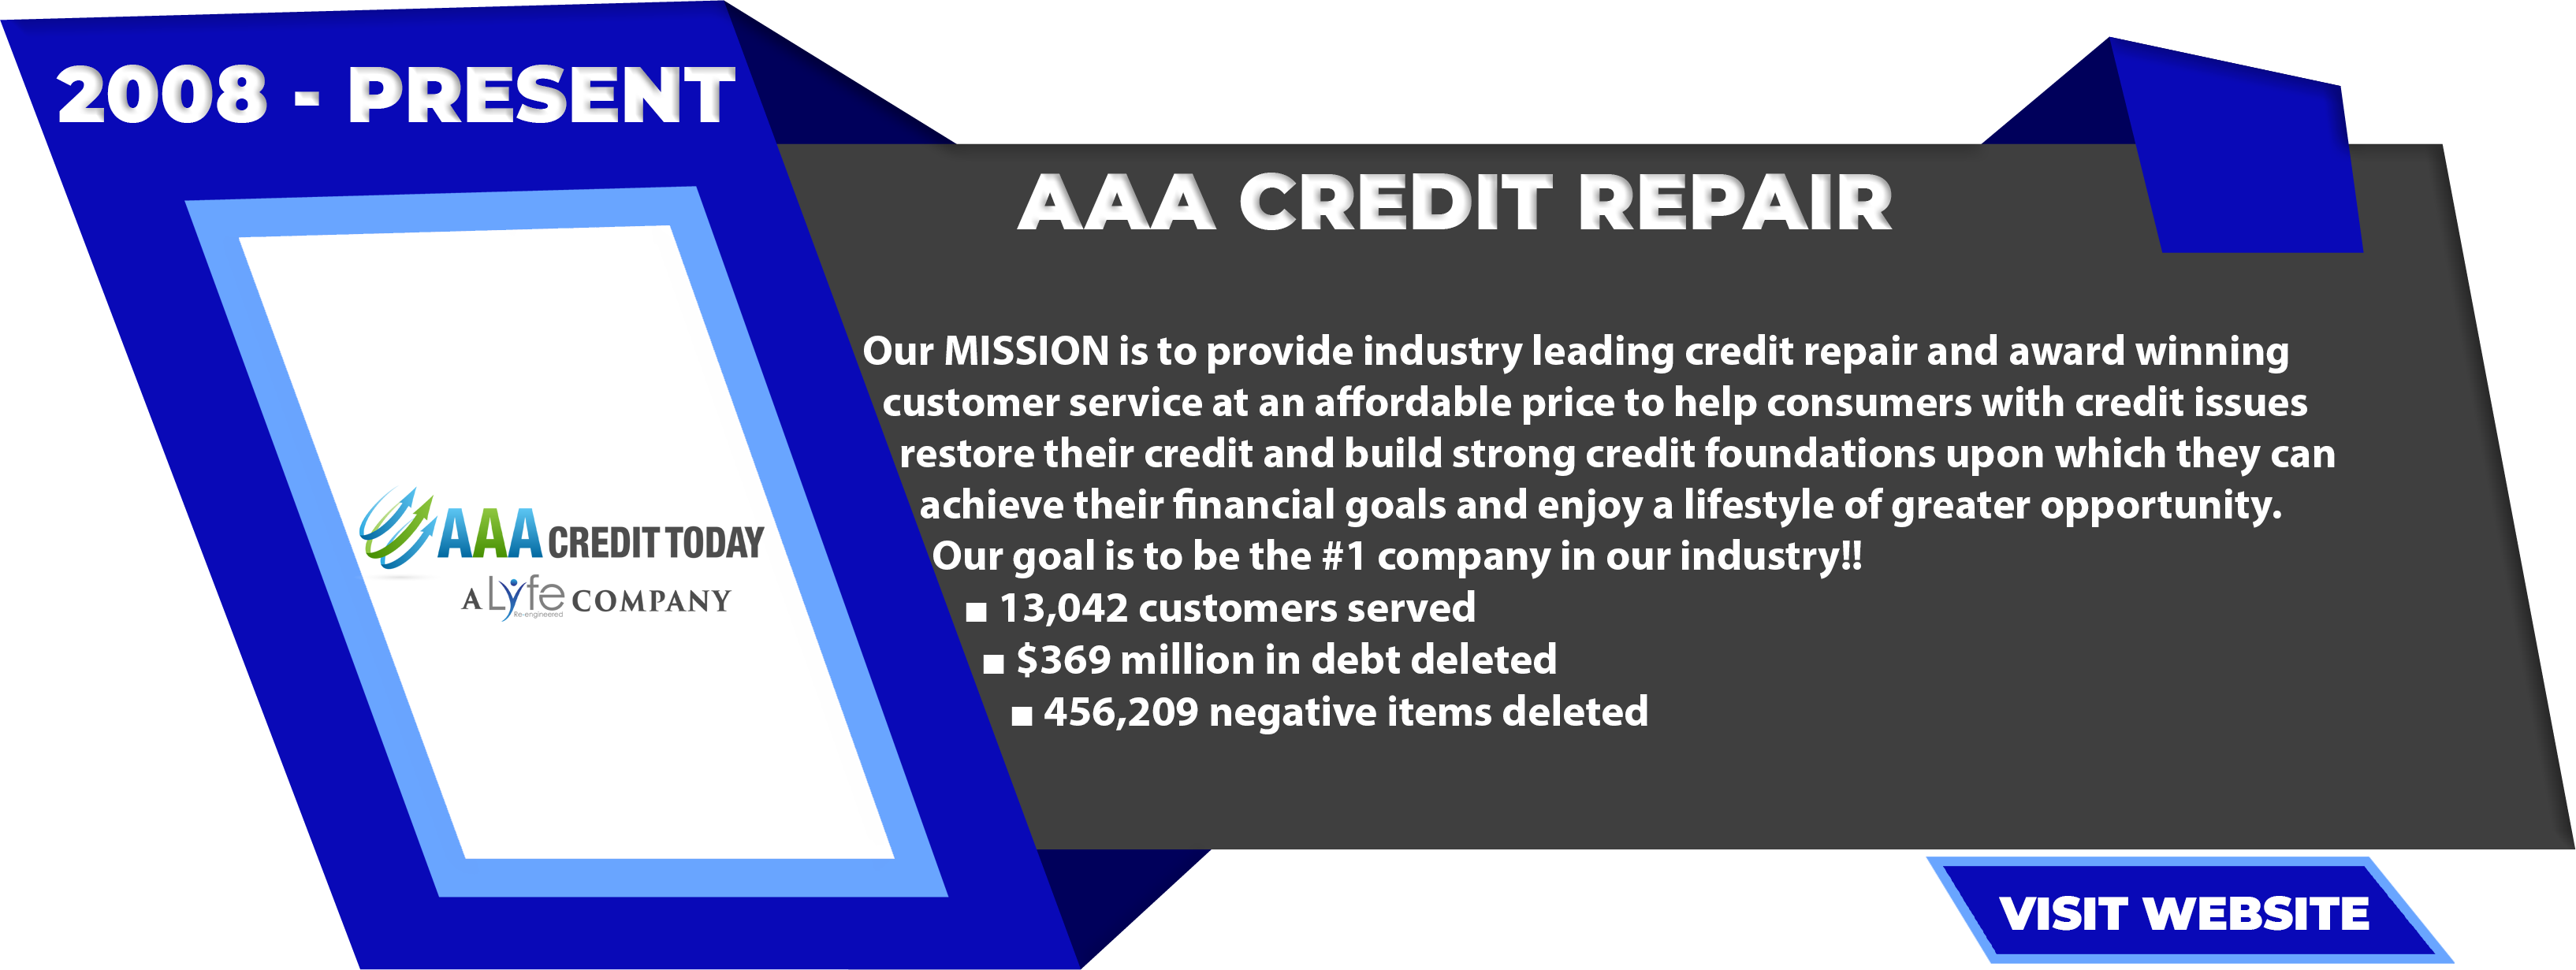 AAA Credit Repair 2008 – Present